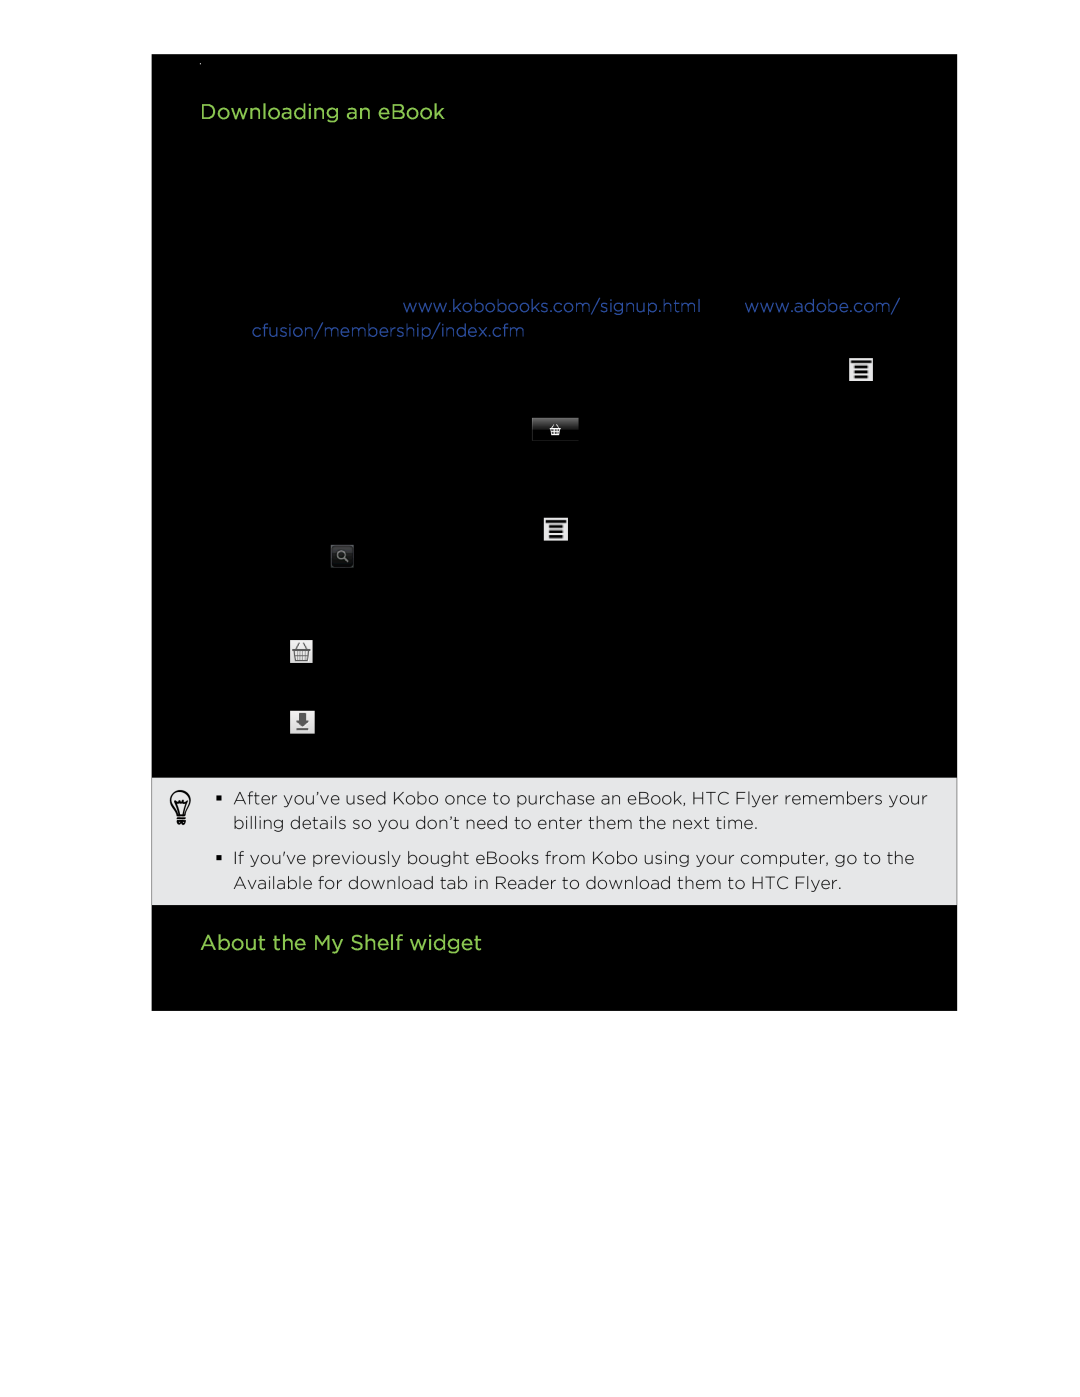 HTC HTCFlyerP512 manual Downloading an eBook, About the My Shelf widget 